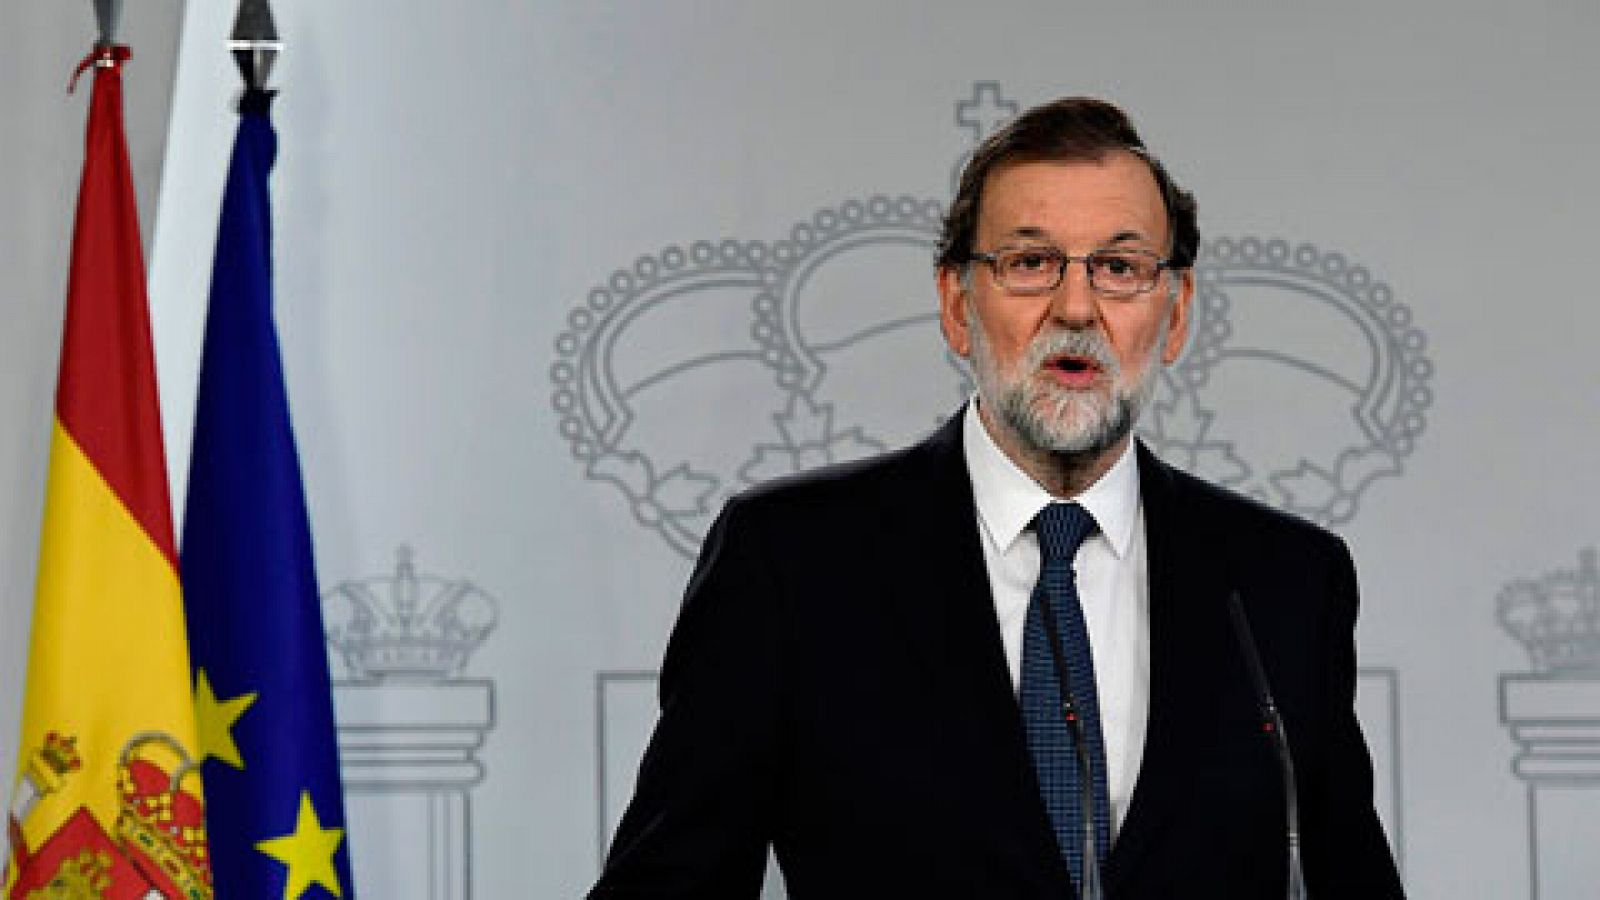 Referéndum en Cataluña: Rajoy comparecerá en el Congreso y convoca a los partidos ante la situación en Cataluña